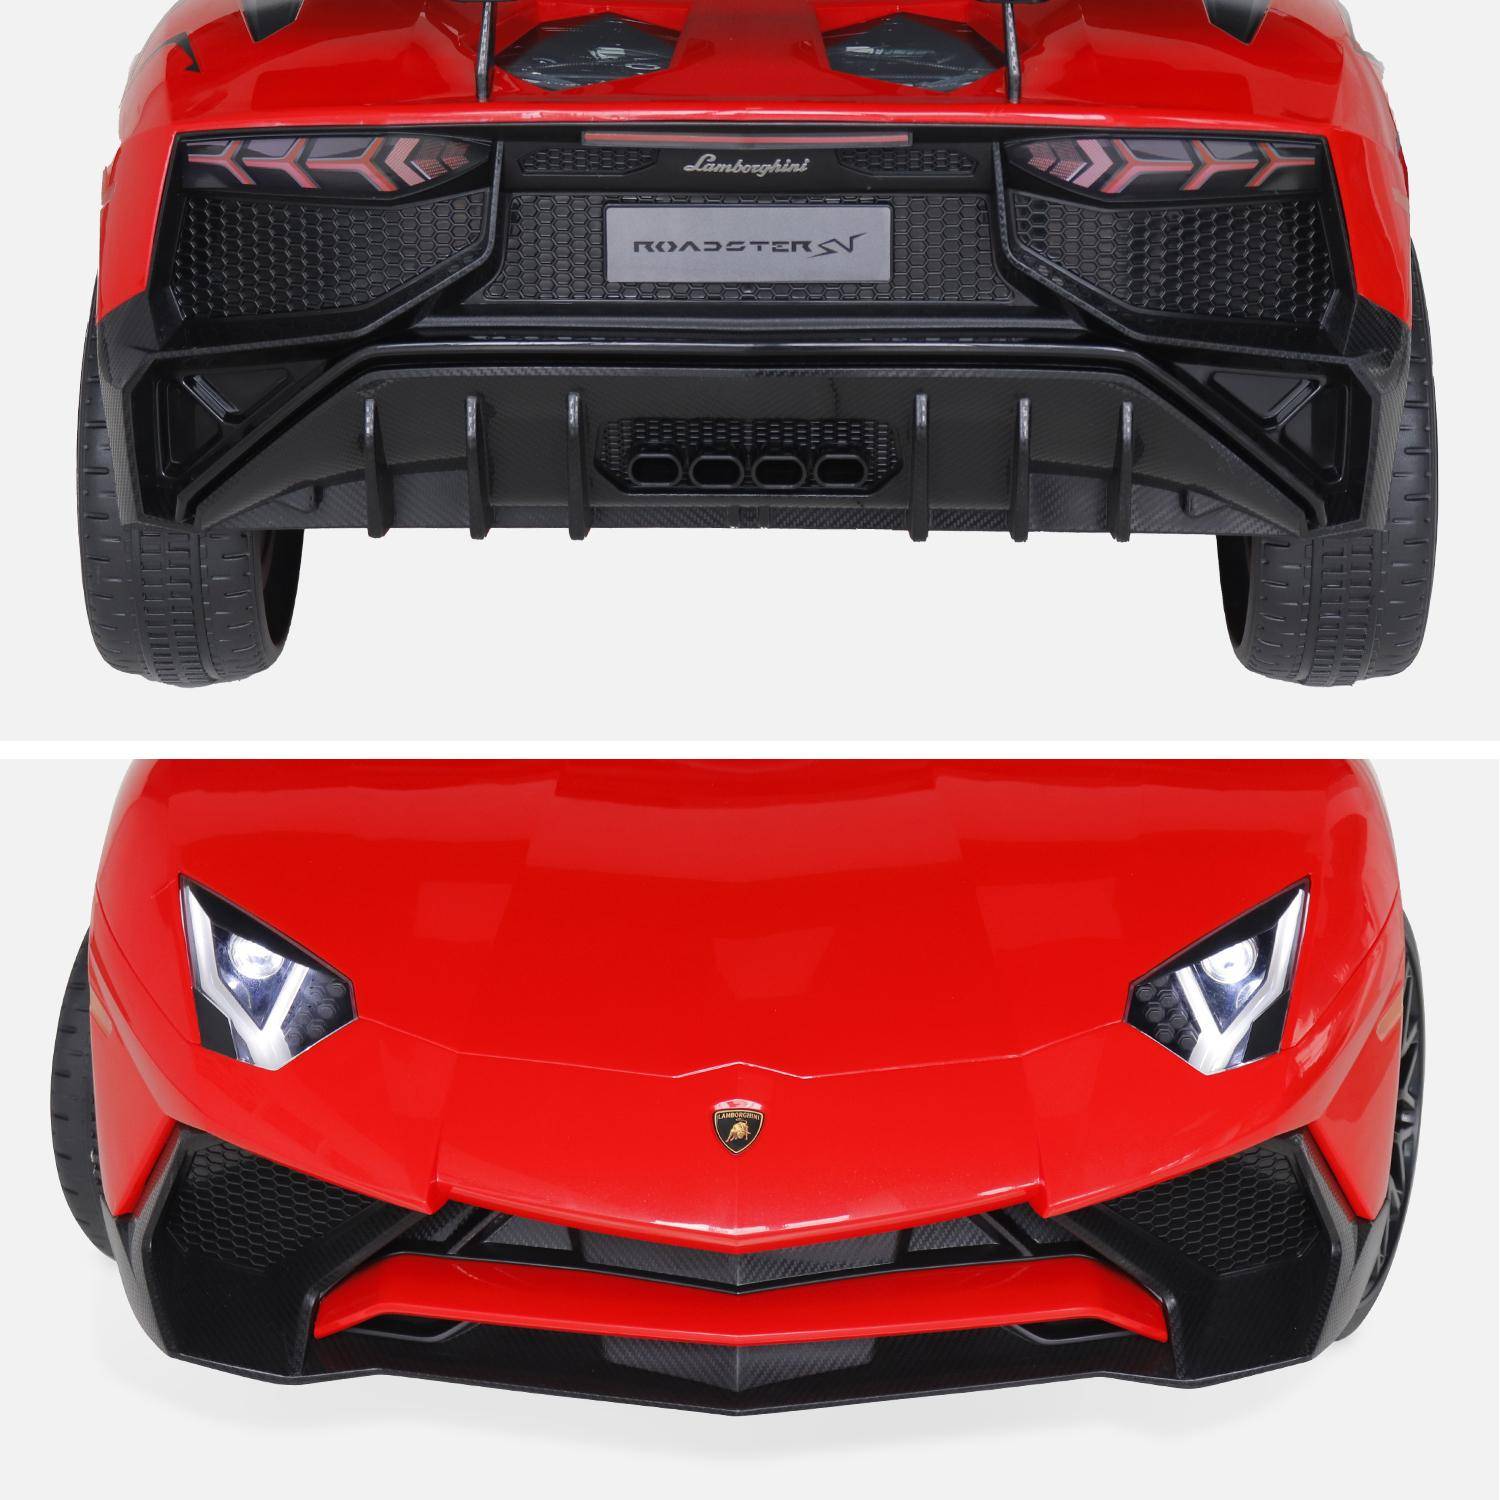 12V Lamborghini elektrische kinderauto, rood, 1 zitplaats, met autoradio, afstandsbediening, MP3, USB-poort en functionele koplampen Photo7